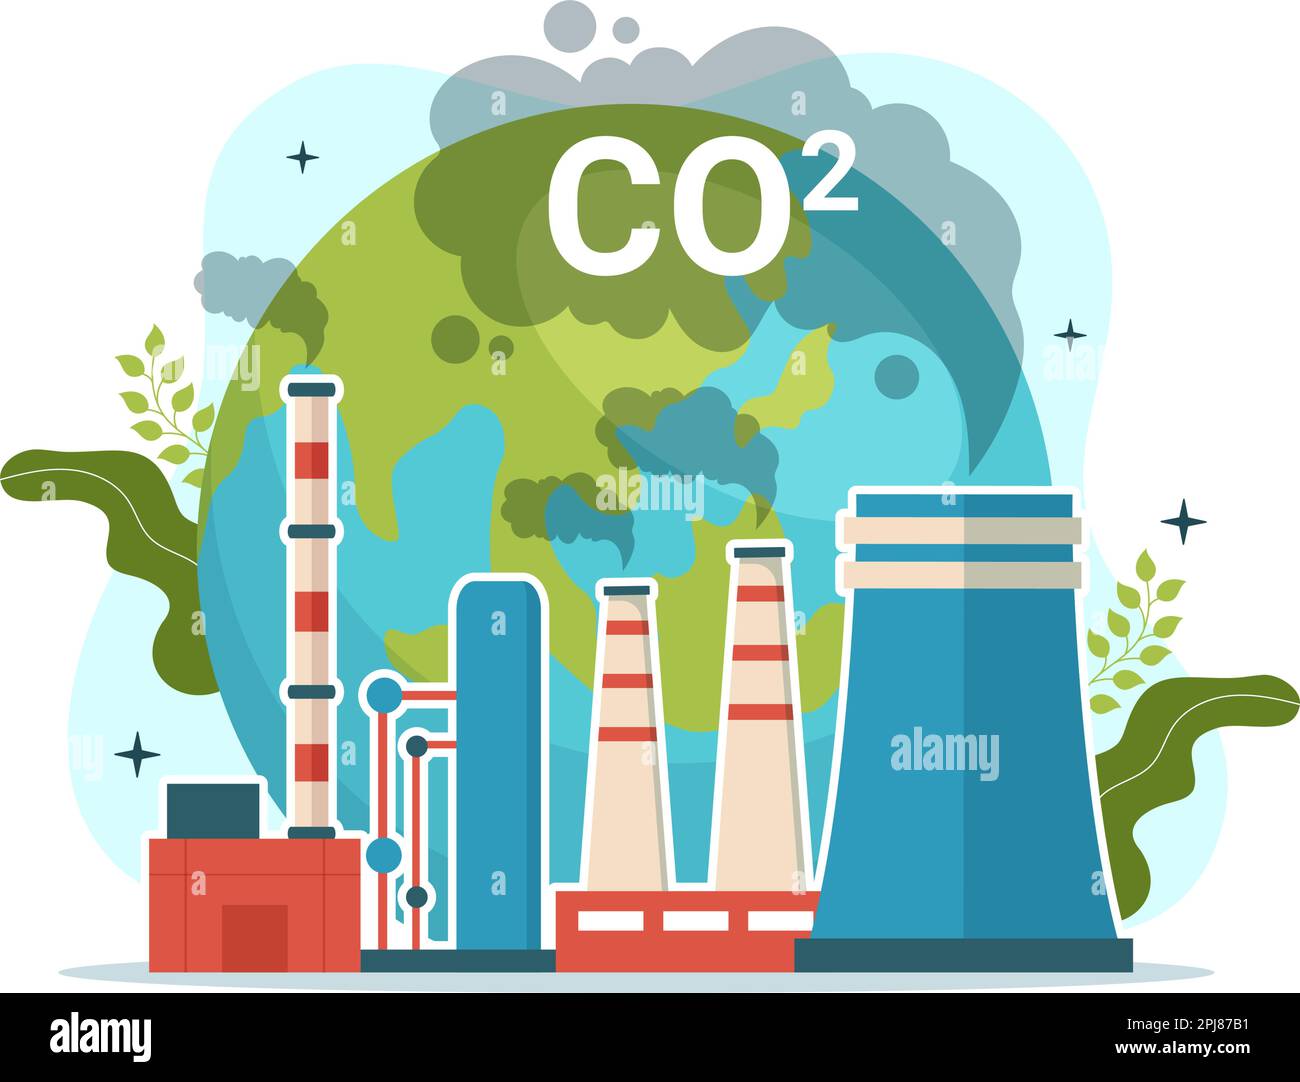 Dioxyde de carbone ou illustration de CO2 pour sauver la planète Terre du changement climatique en raison de la pollution des usines et des véhicules dans des modèles dessinés à la main Illustration de Vecteur